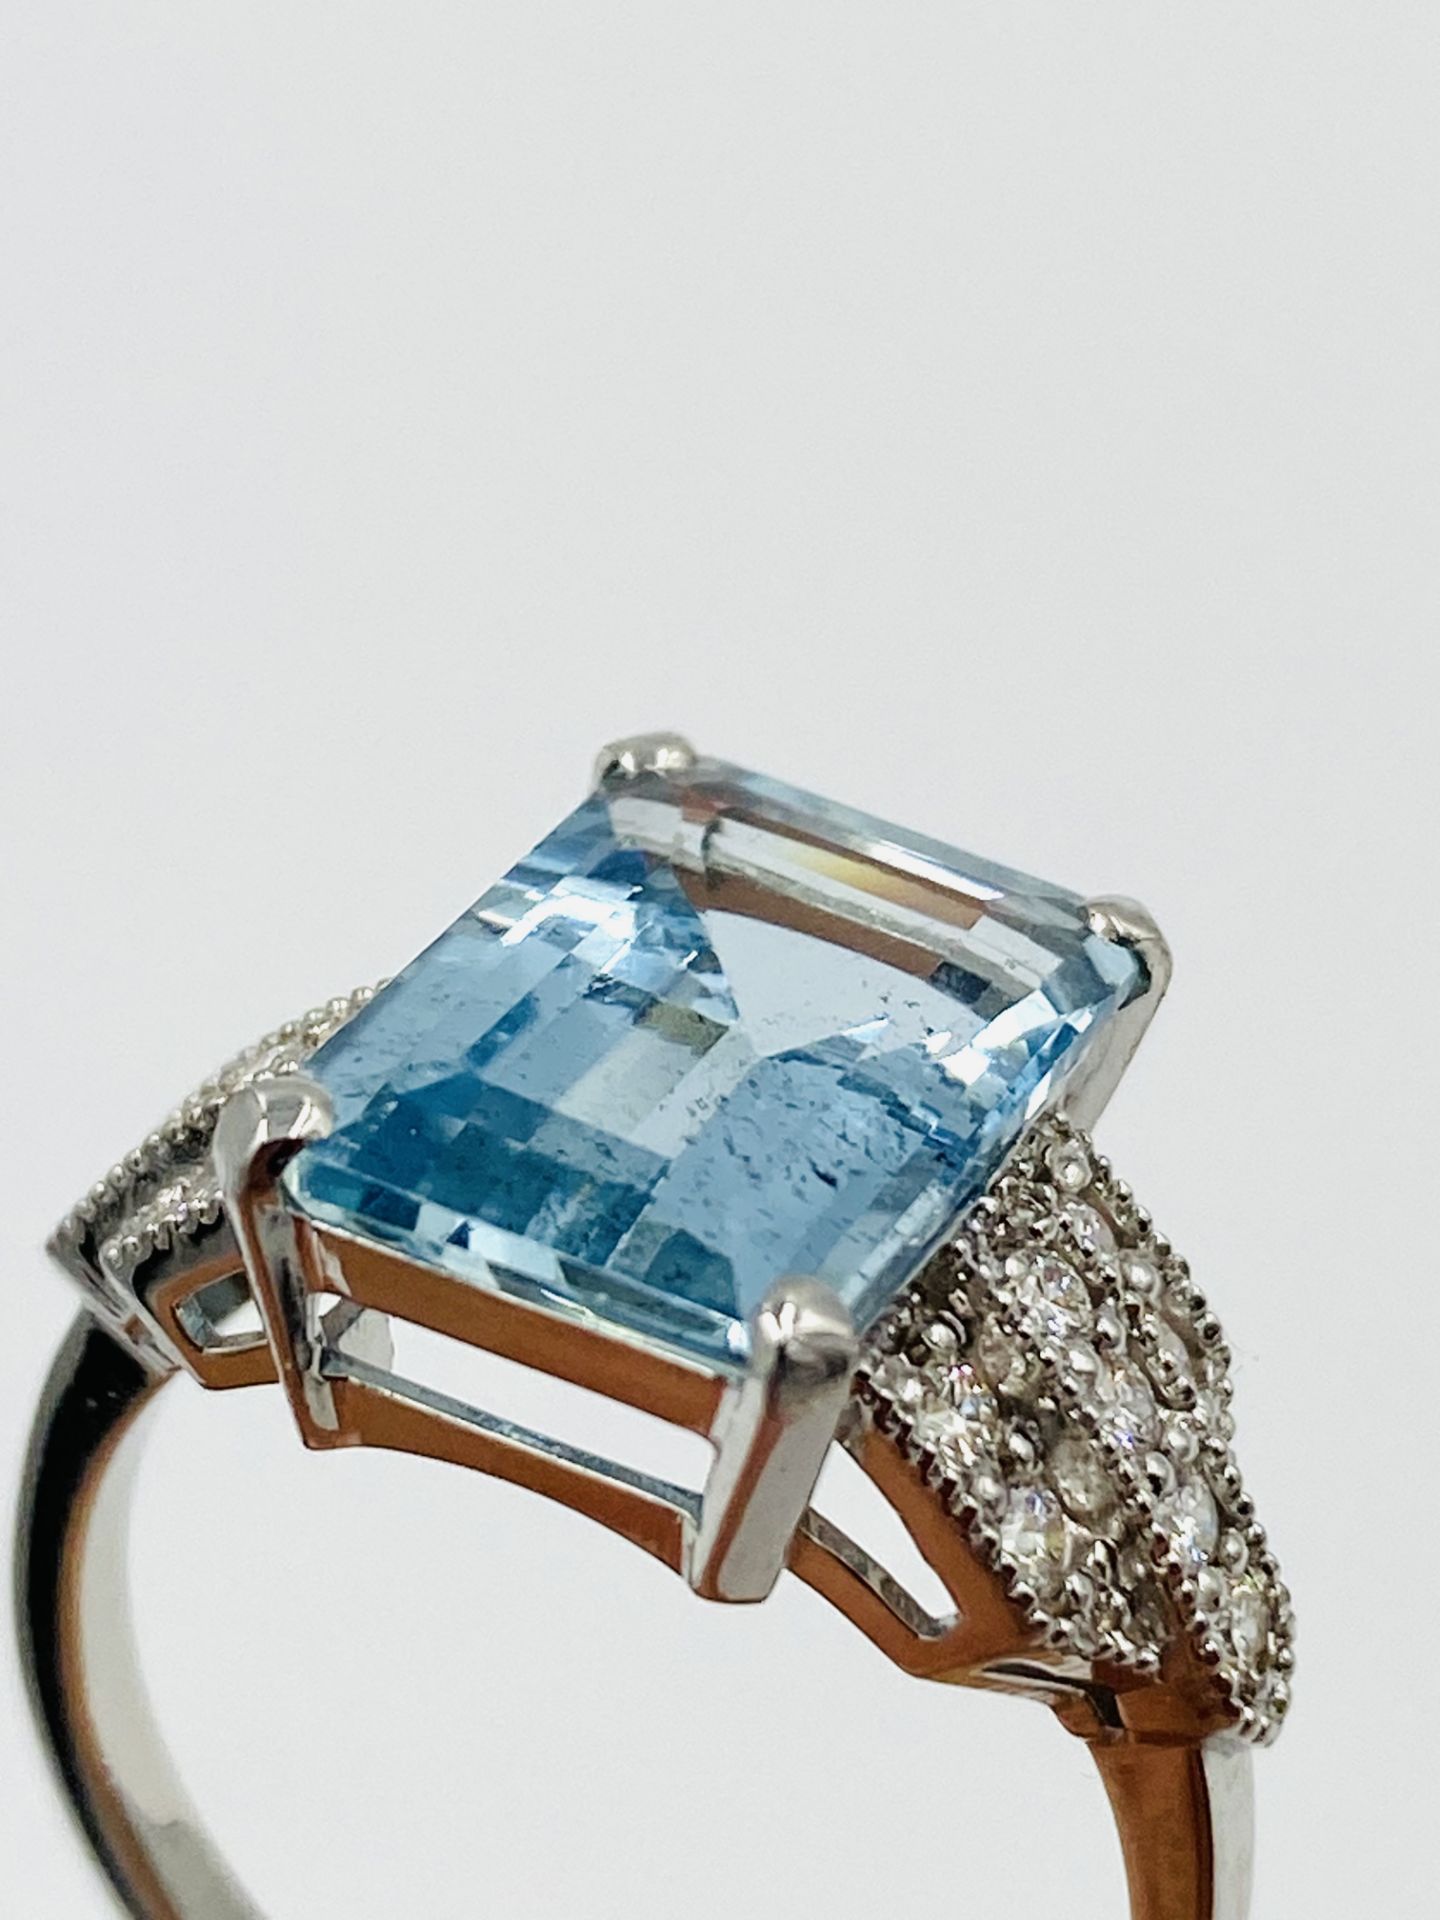 18ct white gold, aquamarine and diamond ring - Image 6 of 6